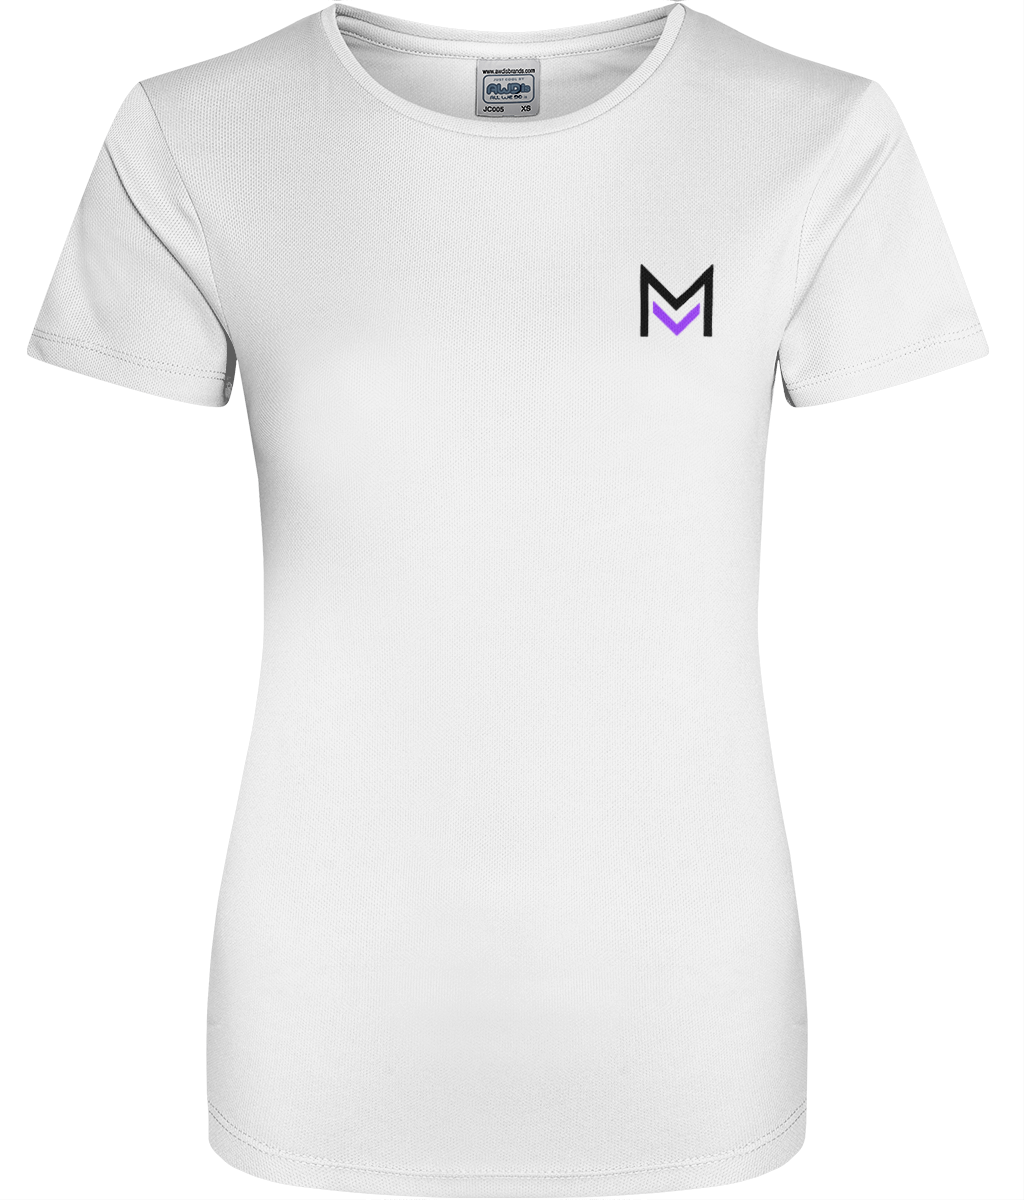 Mana Merch Women's Cool Sports T-shirt